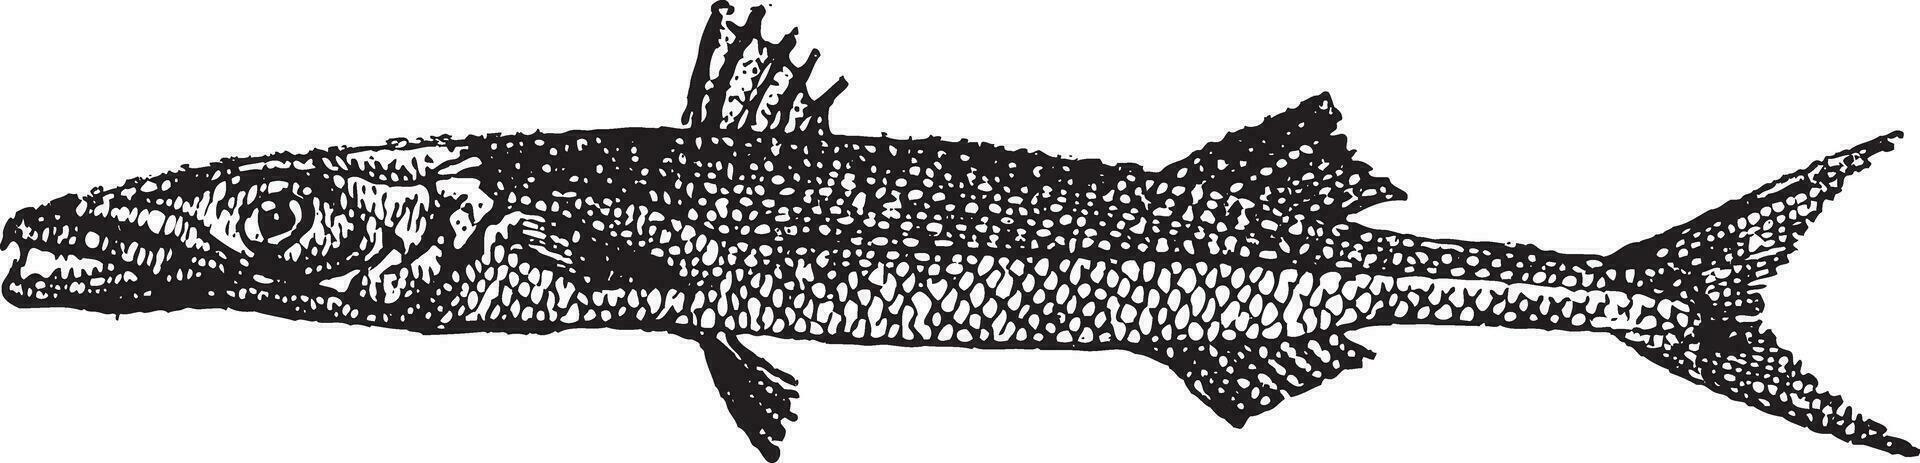 barracuda eller sphyraena sp., årgång gravyr vektor